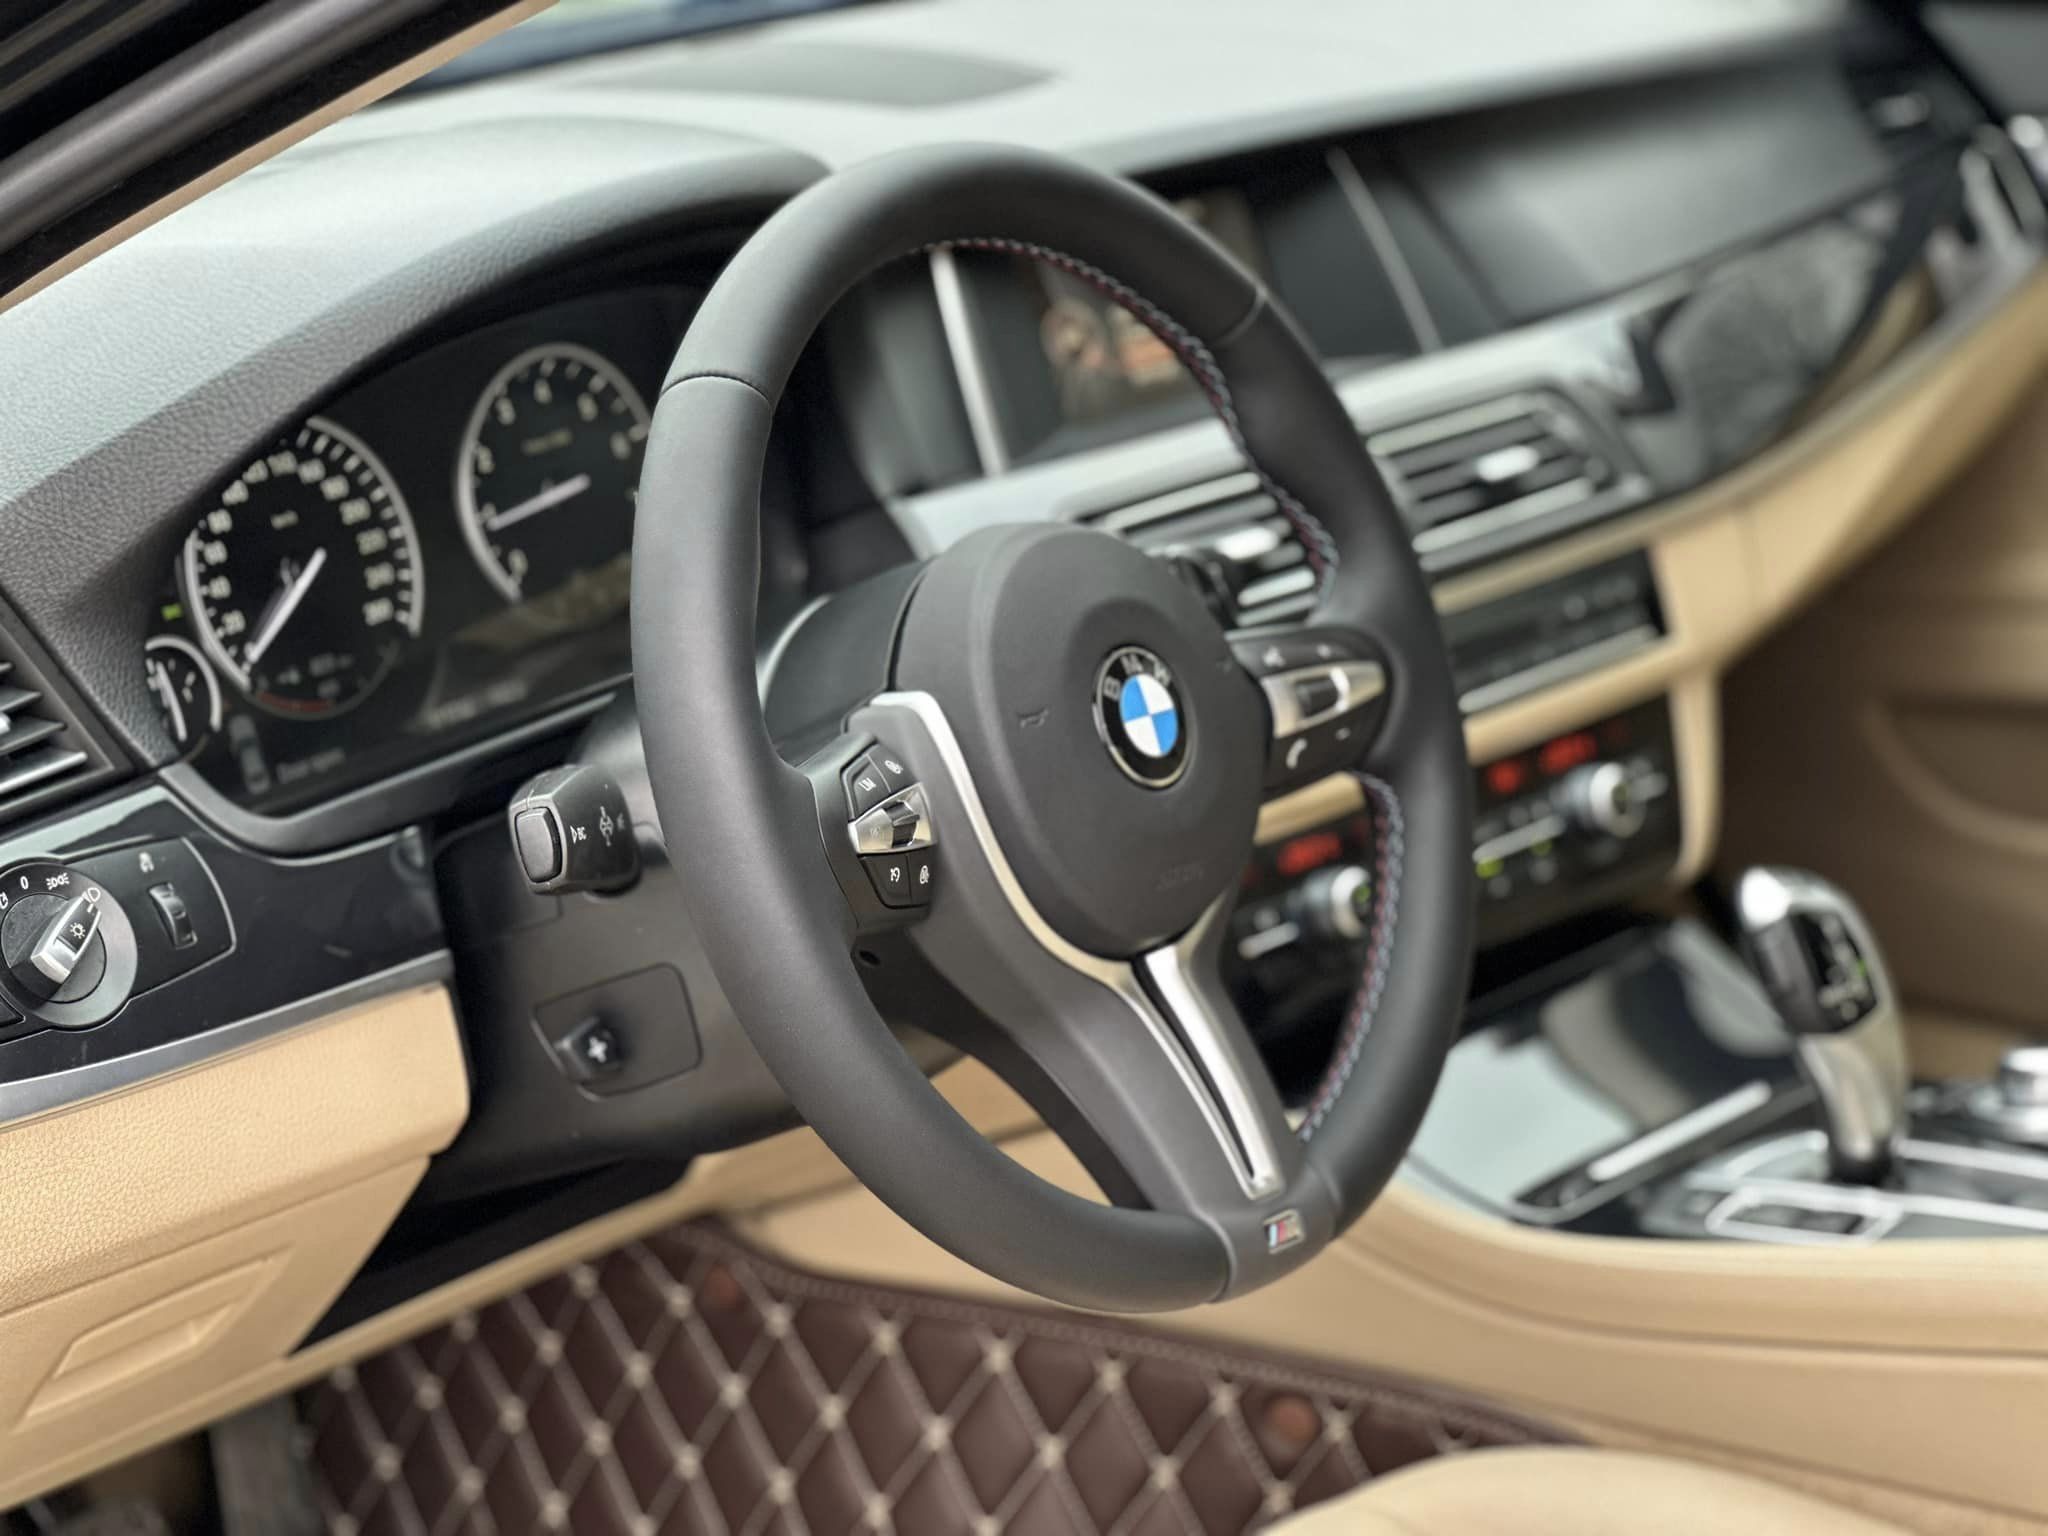 BMW 520i đời 2015 giá 700 triệu đồng, có nên mua?